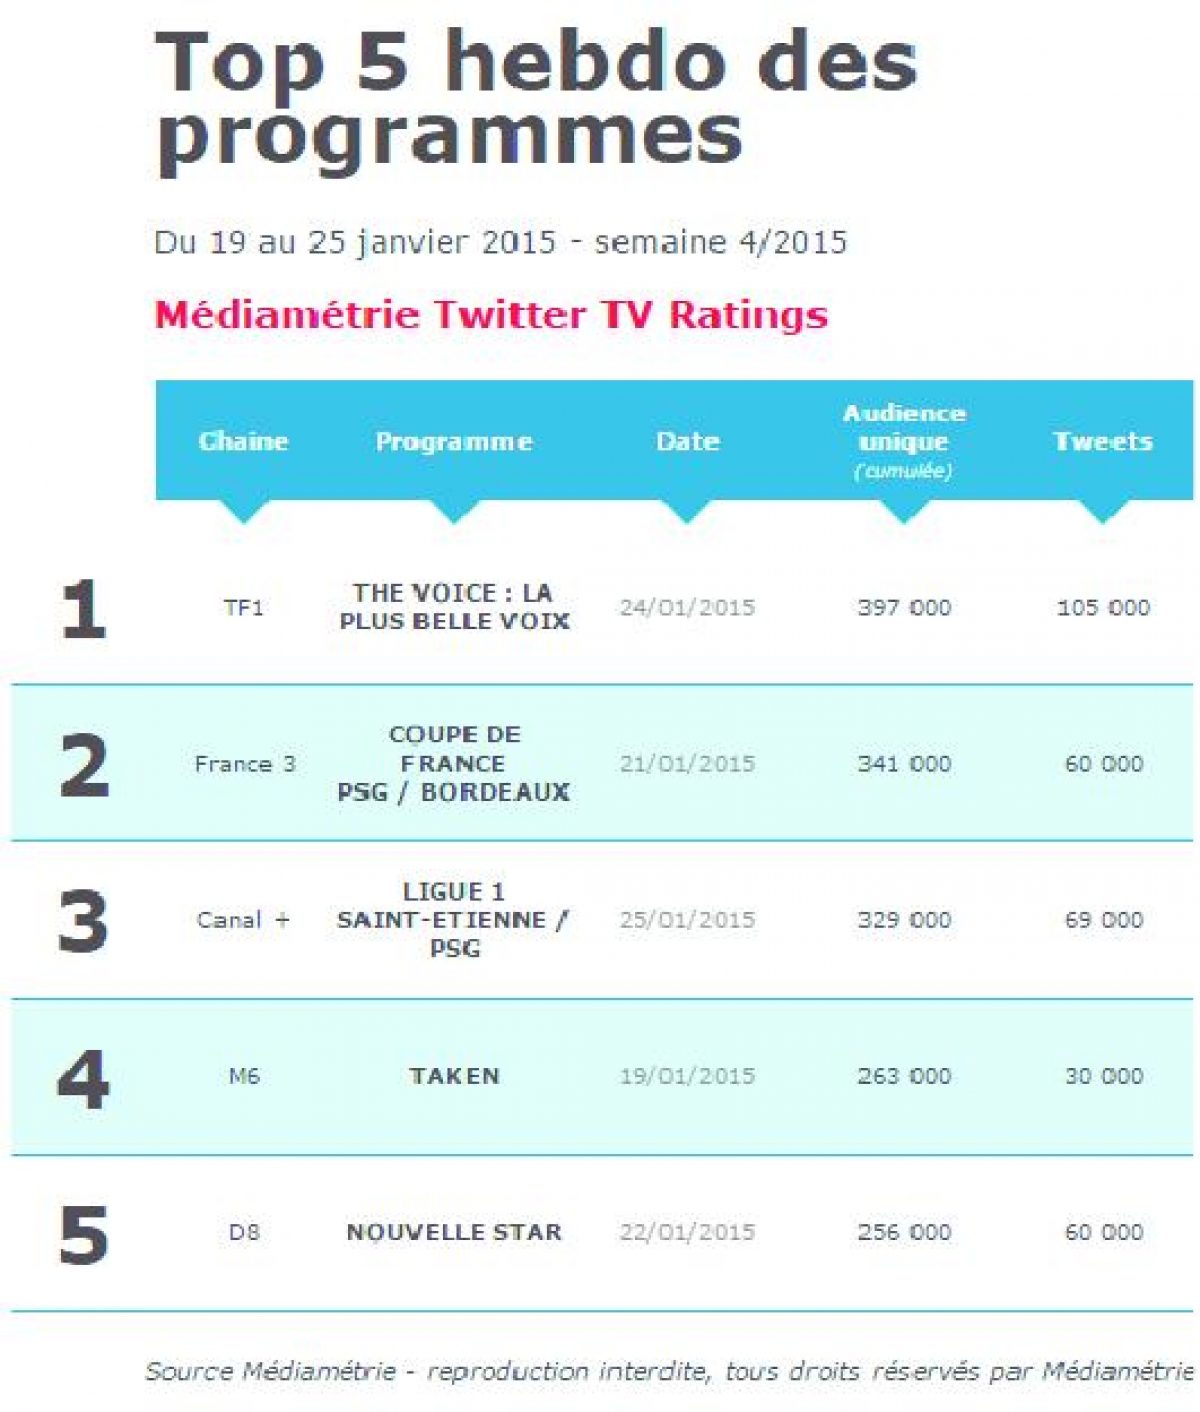 Découvrez le 1er Top 5 hebdomadaire du Médiamétrie Twitter TV Ratings